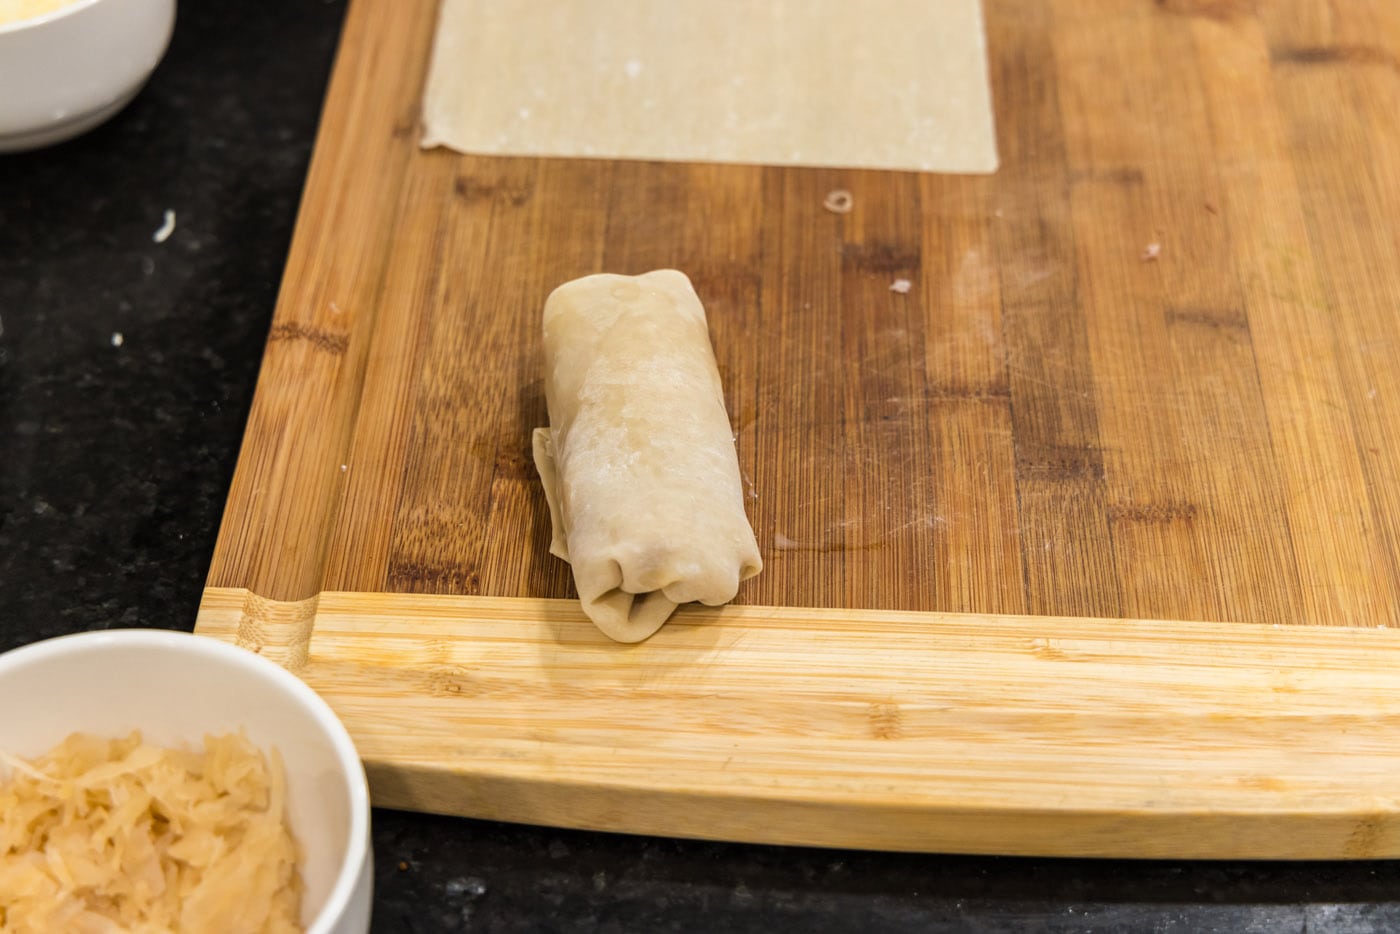 reuben egg roll on a cutting board